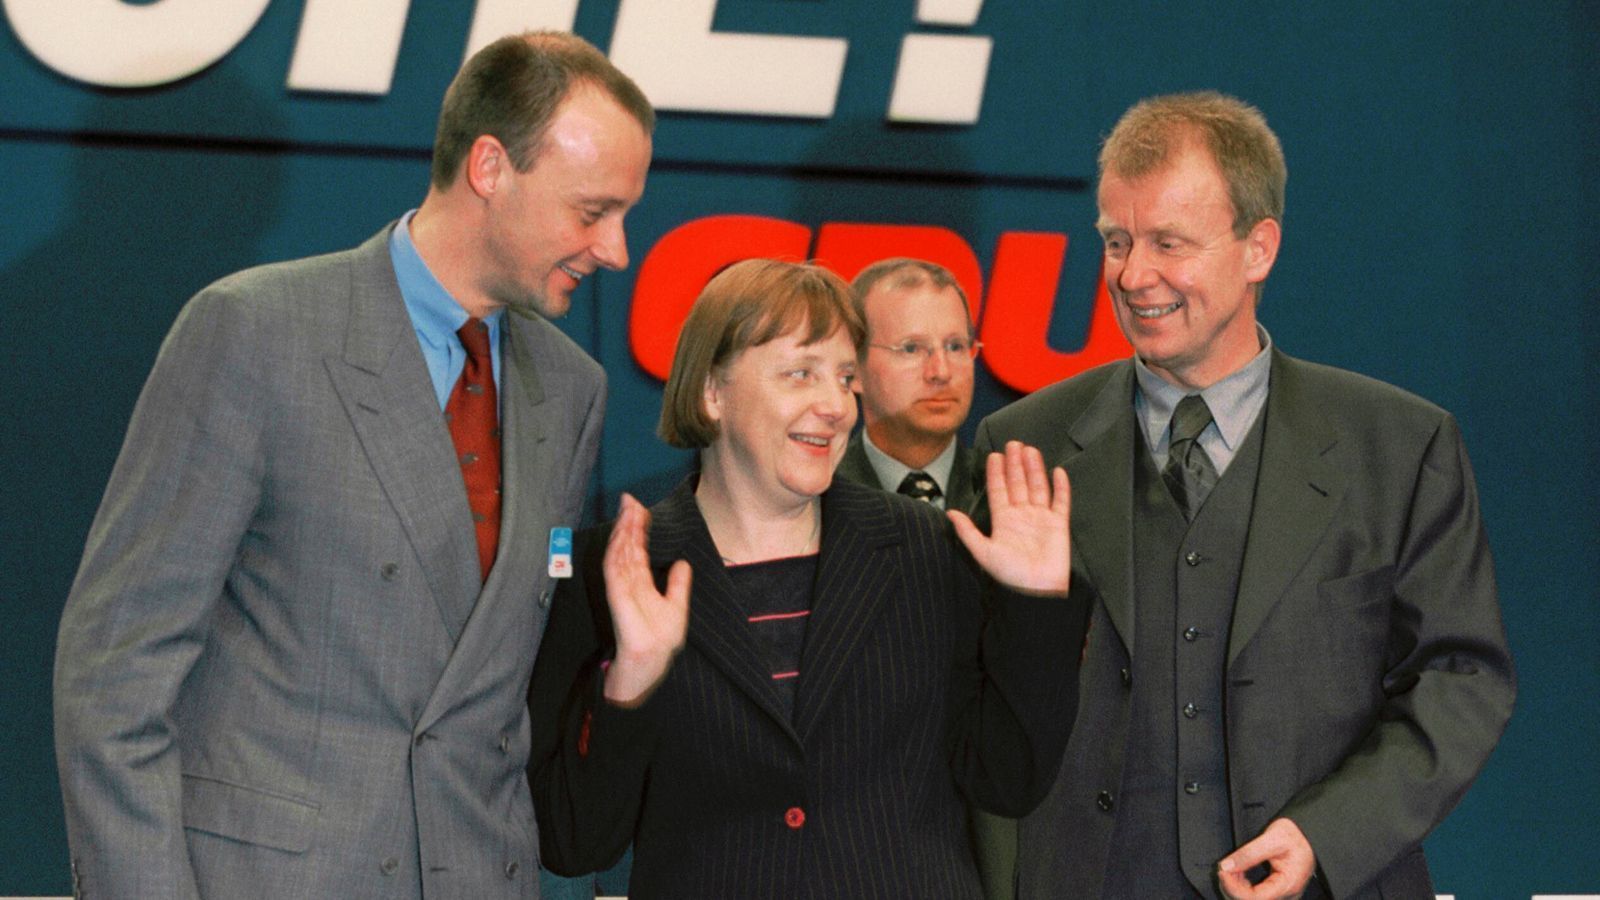 
                <strong>Angela Merkel wird neue CDU-Vorsitzende</strong><br>
                Im April 2000 wird Angela Merkel zur neuen Vorsitzenden in der CDU gewählt. Sie ist damit die erste Frau in dieser Position. Es ist der Beginn ihres Aufstieg, der sie 2005 ins Kanzleramt bringt.
              